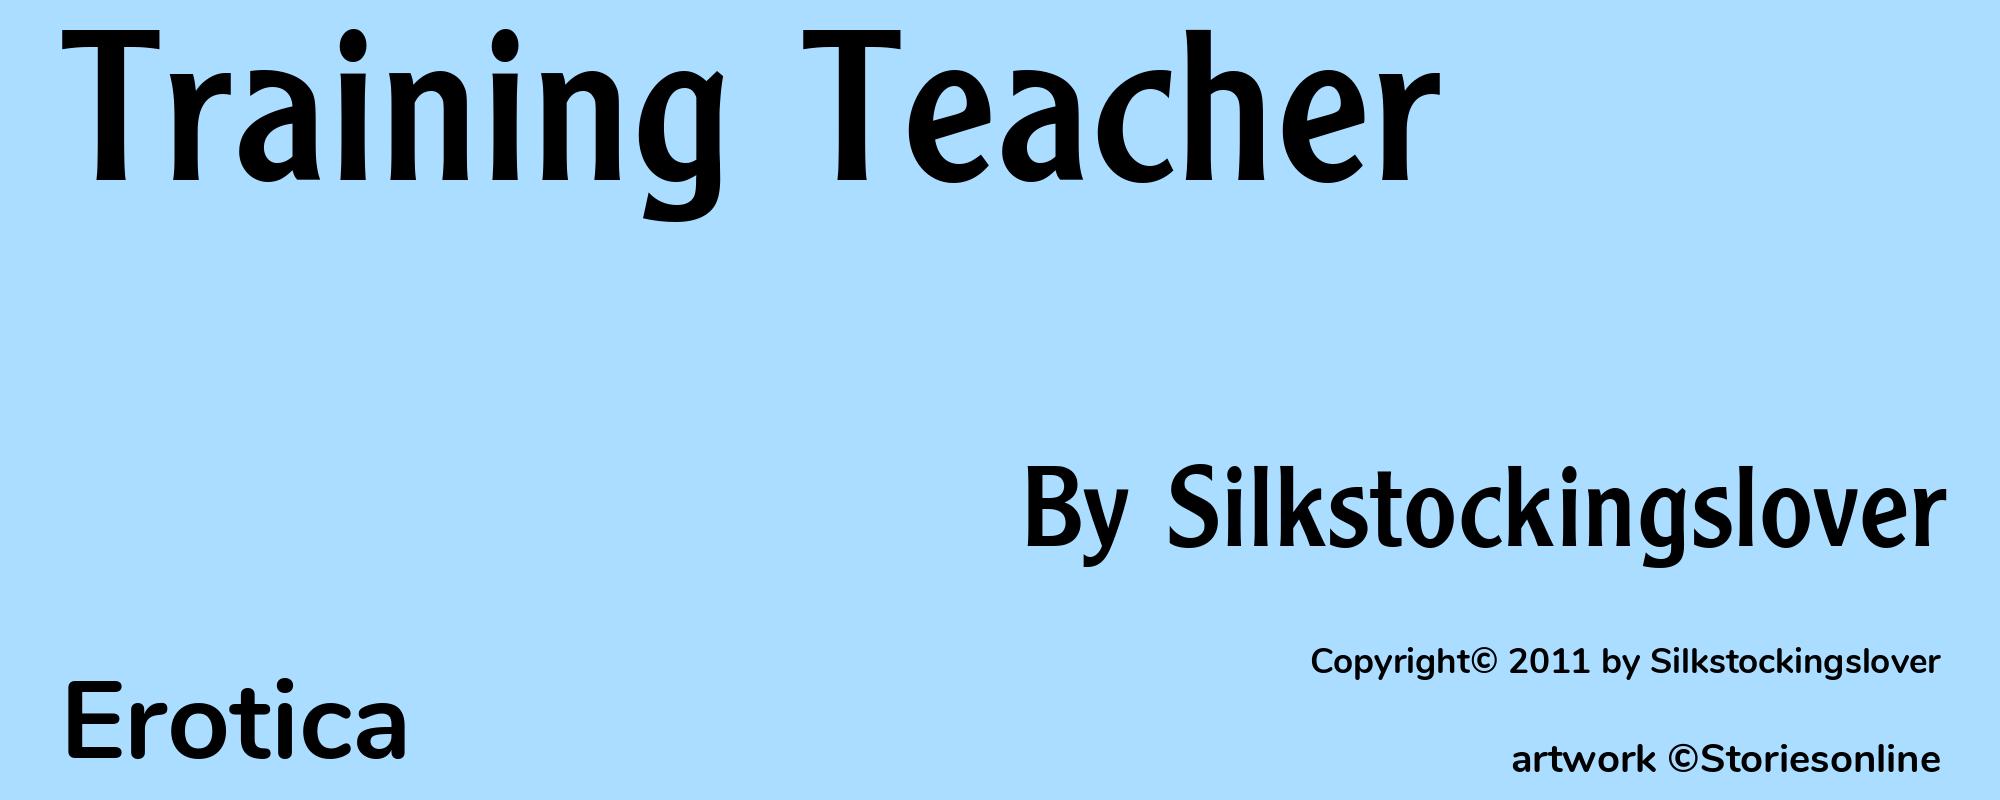 Training Teacher - Cover